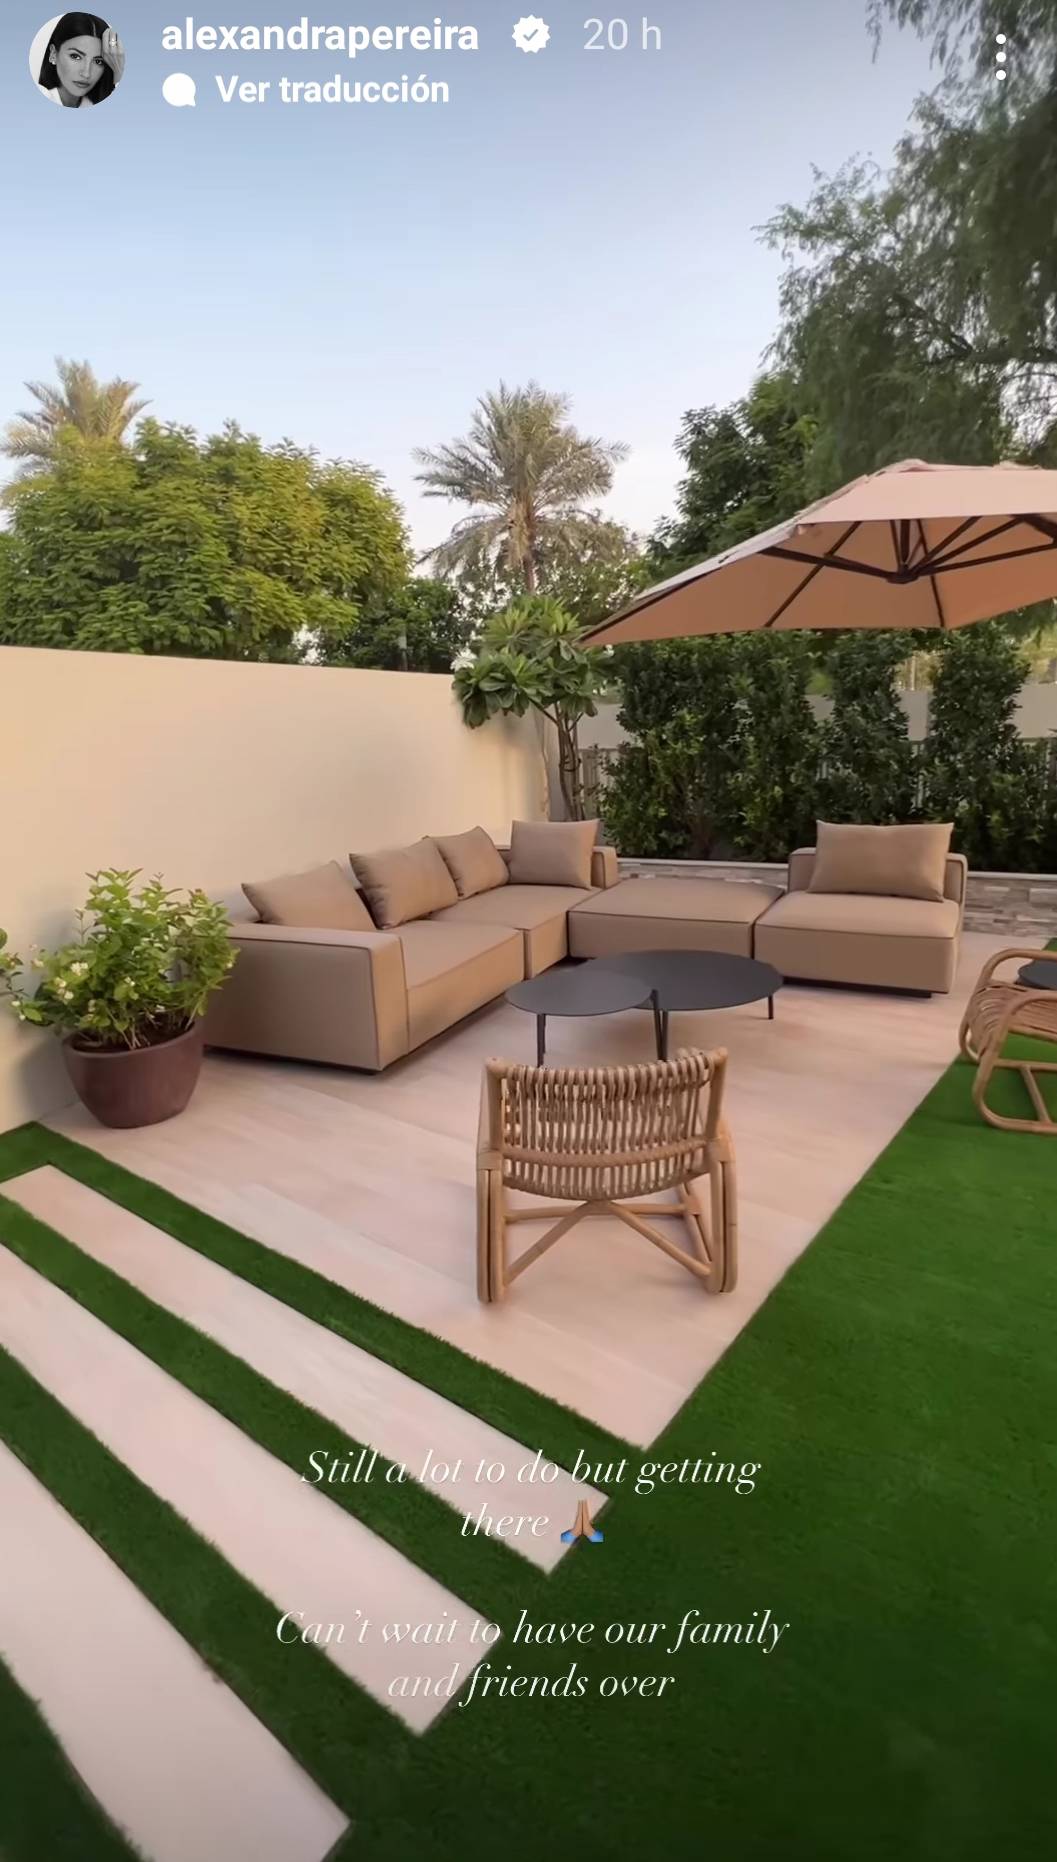 Zona de sofás del jardín de la casa de Alexandra Pereira en Dubái.